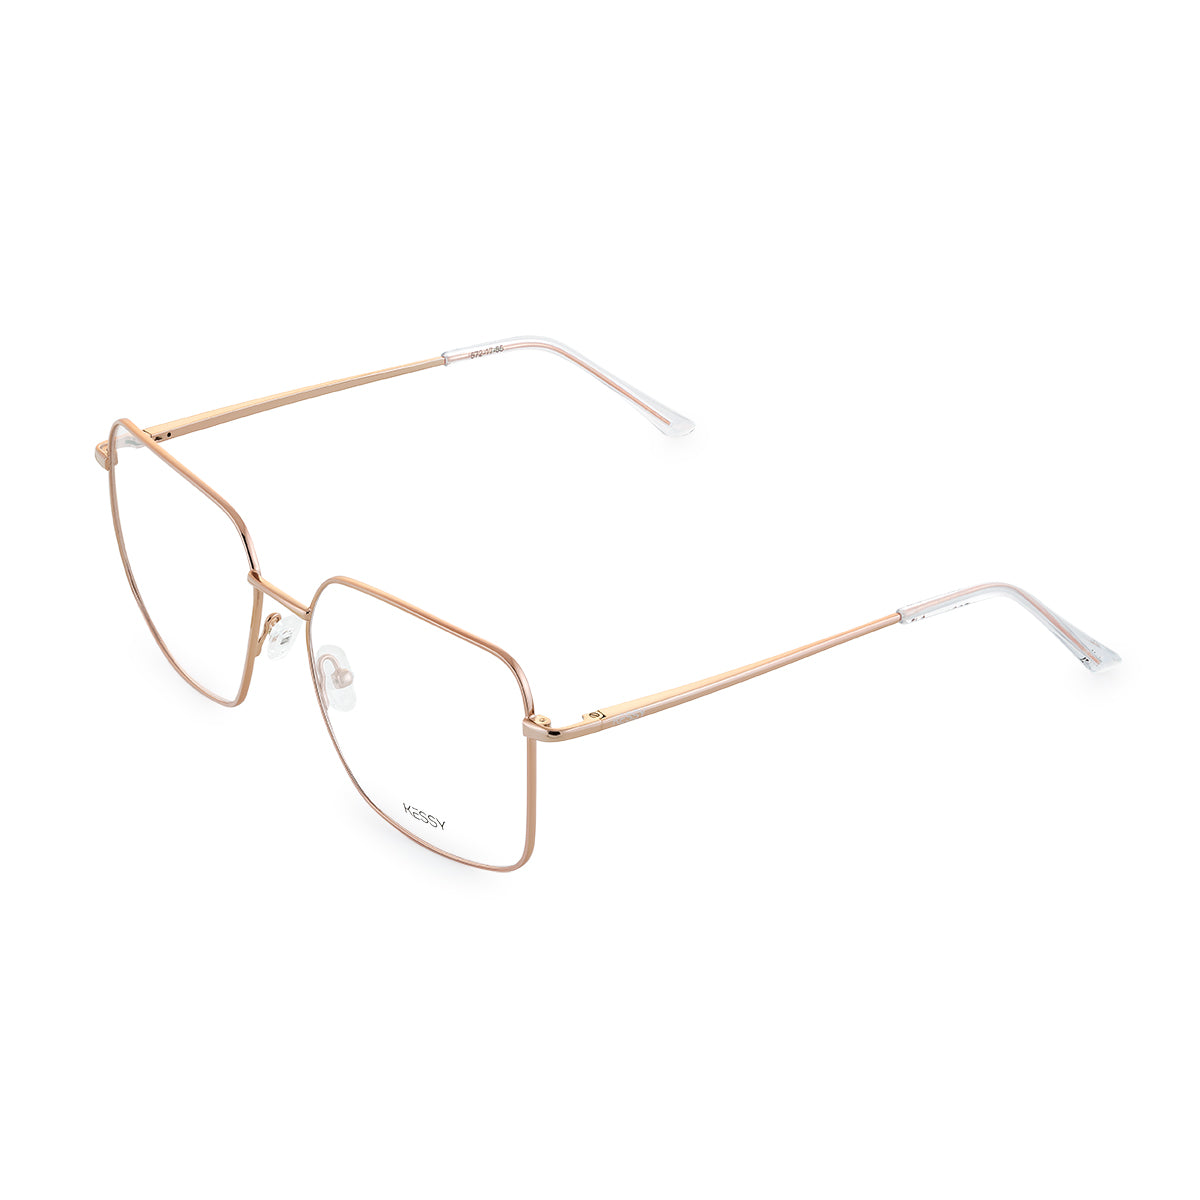 Óculos de Grau Kessy 401